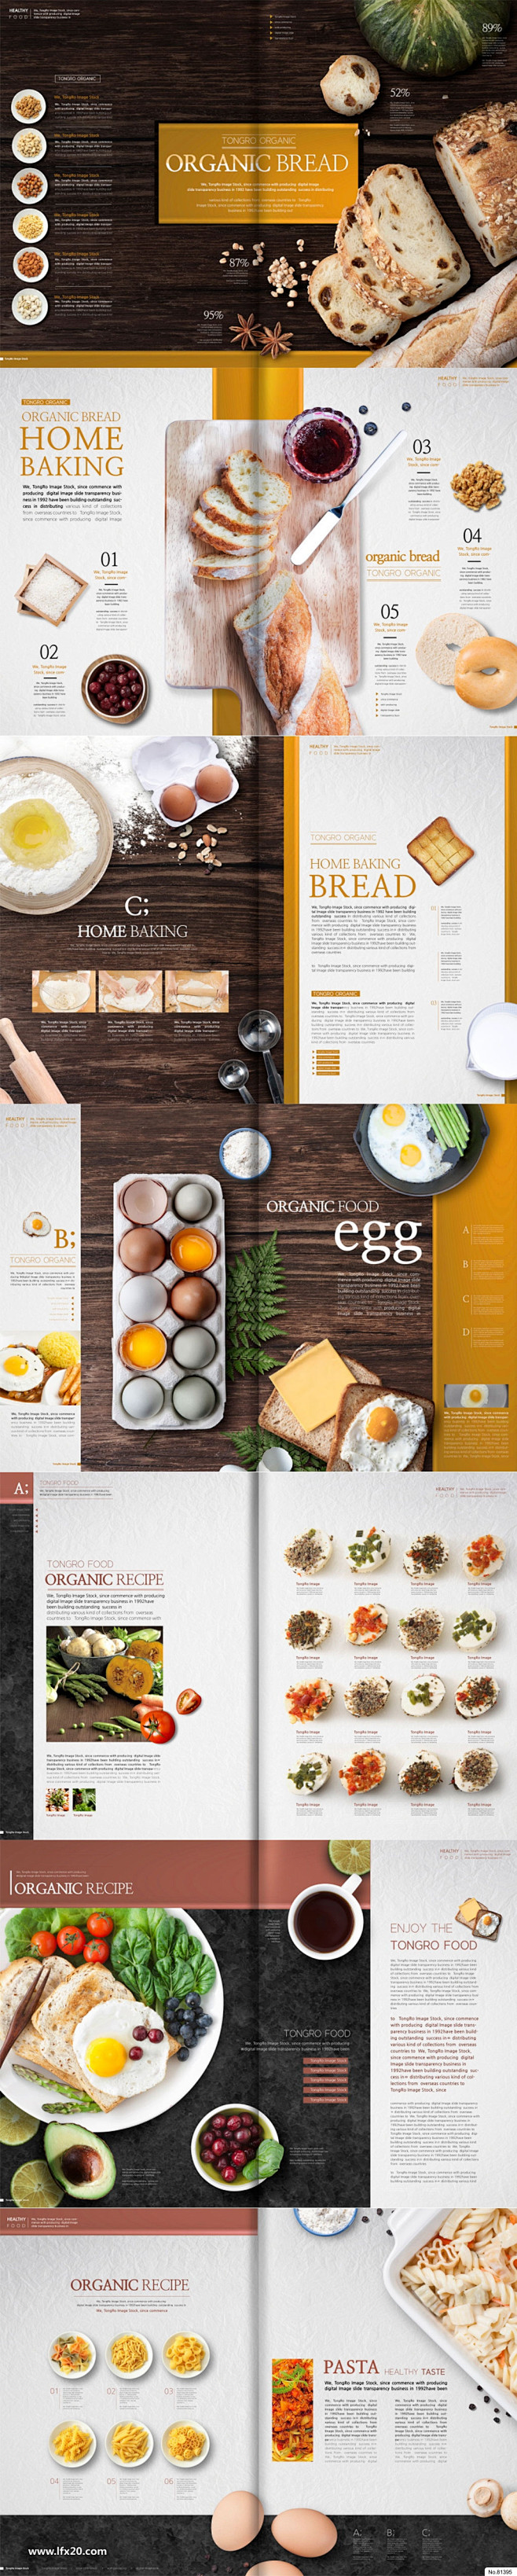 营养鸡蛋面食蔬菜美食早餐海报画册PSD素